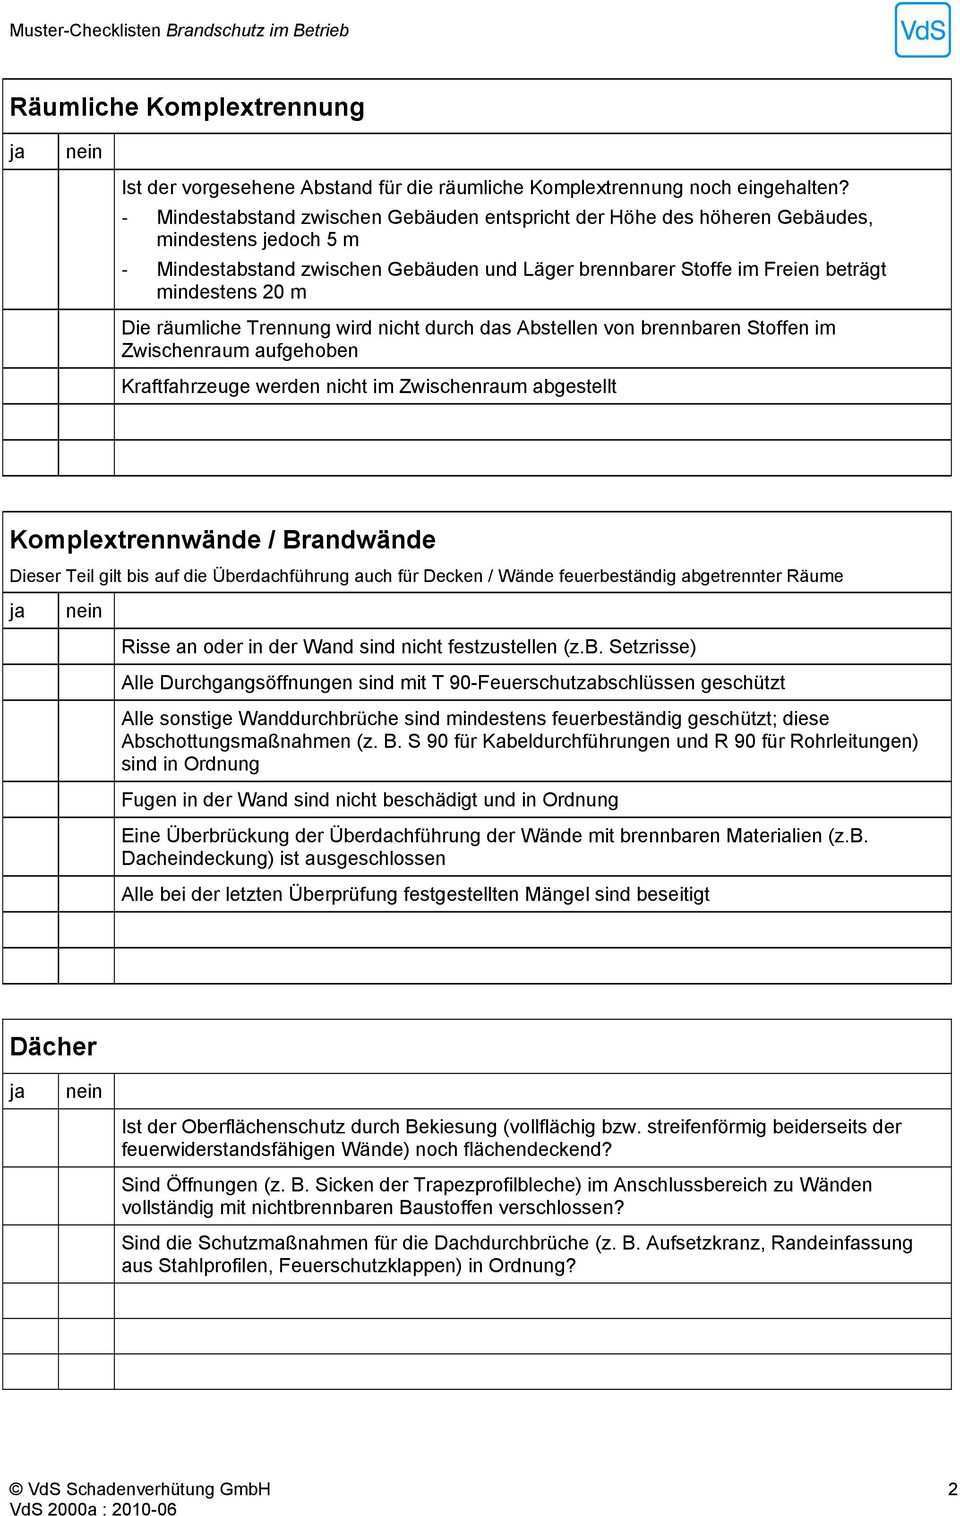 Muster Checklisten Brandschutz Im Betrieb Pdf Kostenfreier Download